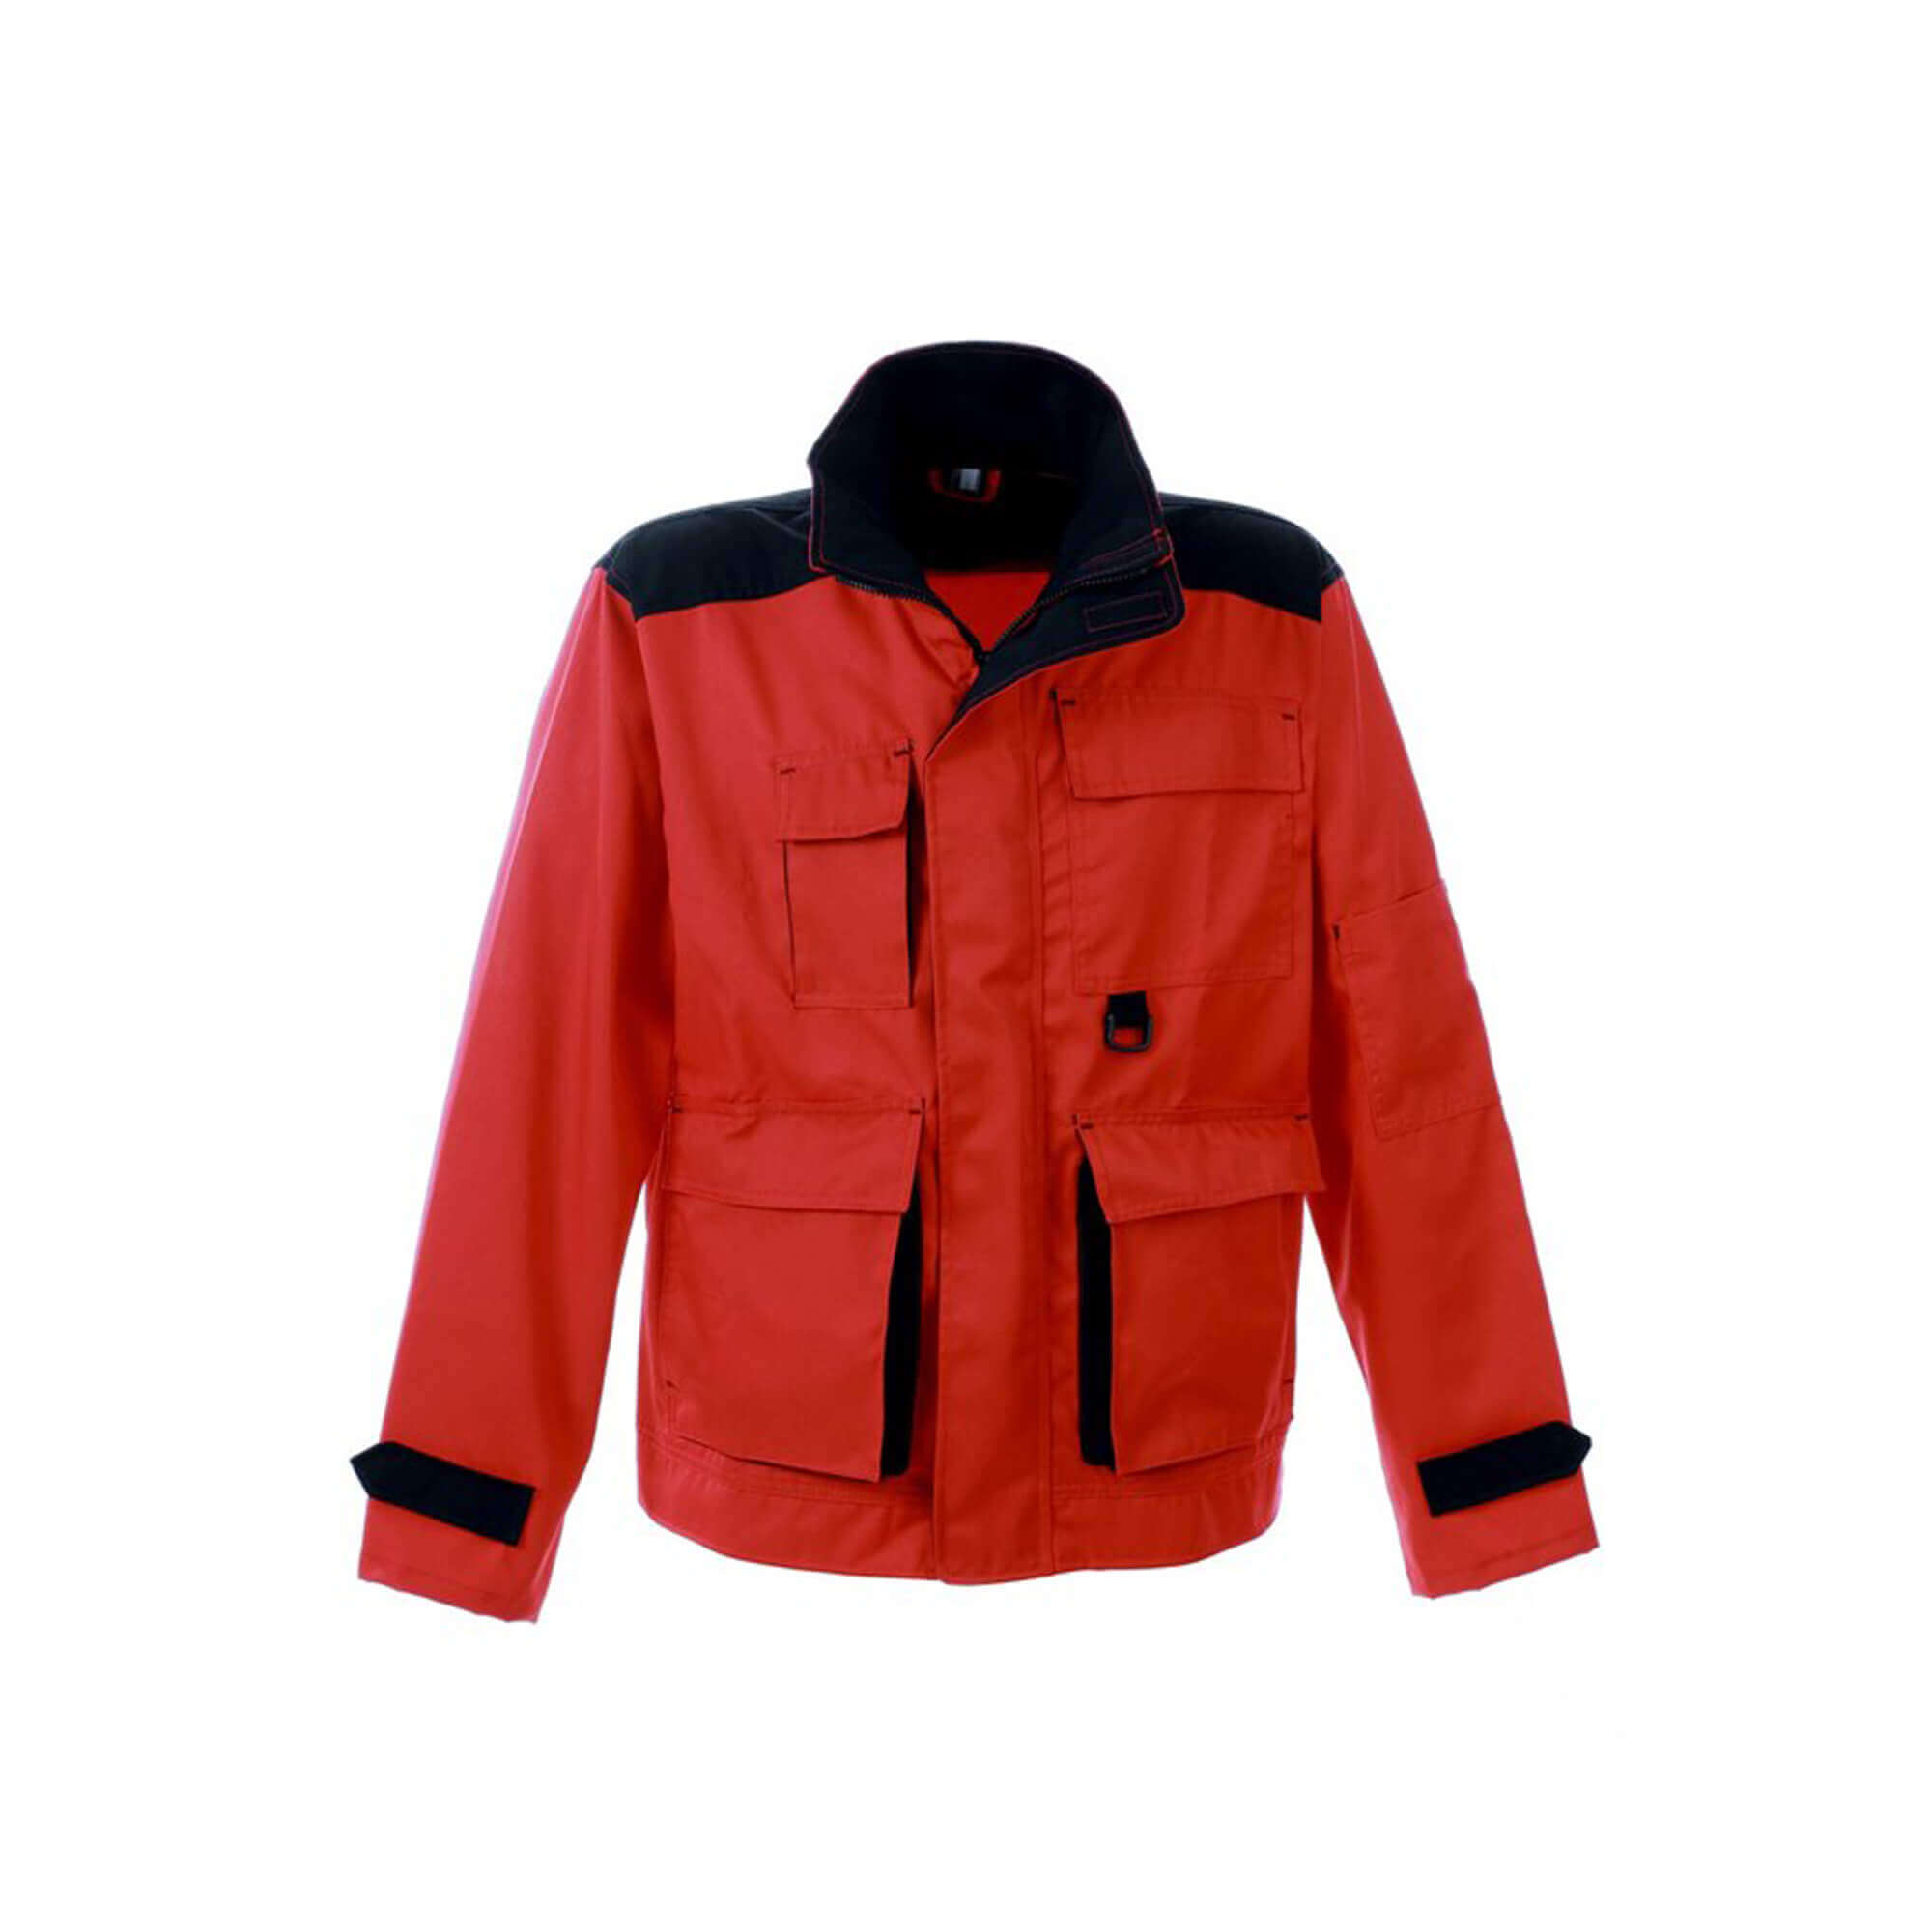 Work jacket Spektar, red